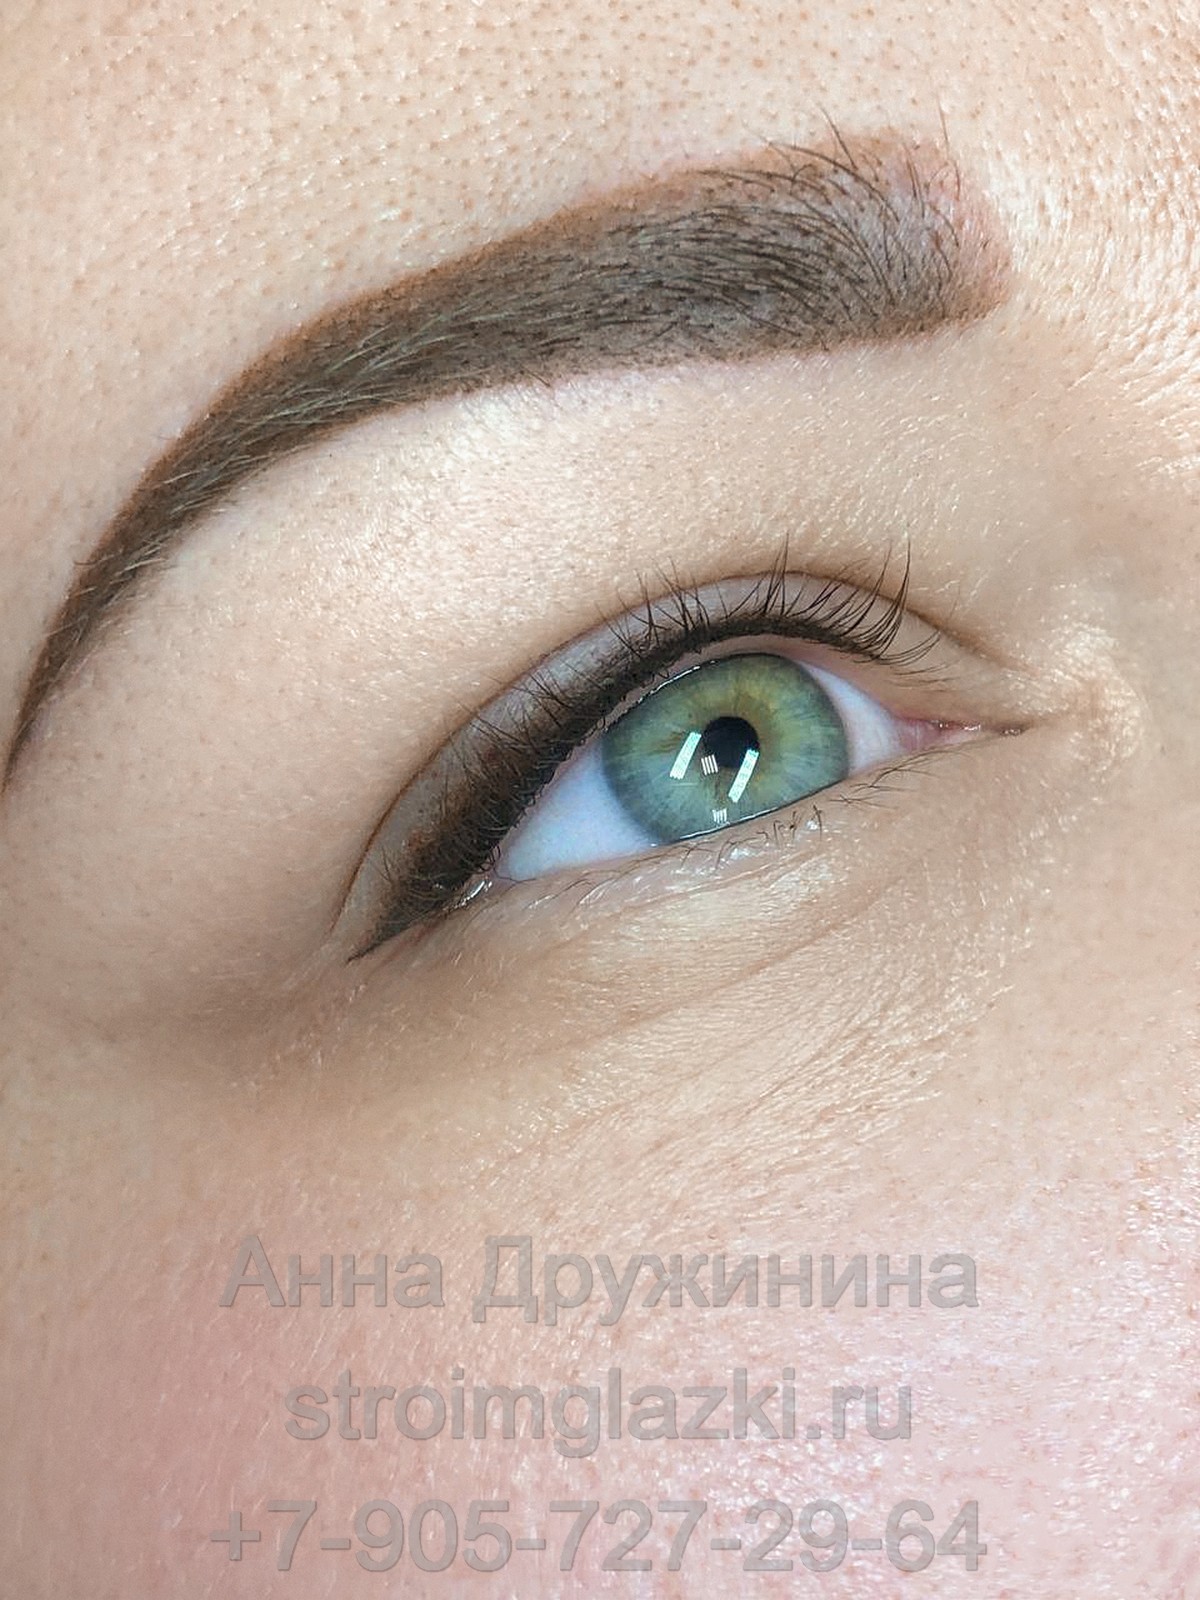 татуаж стрелки на глазах, выполненный в Салоне Красоты Строимглазки Анны Дружининой